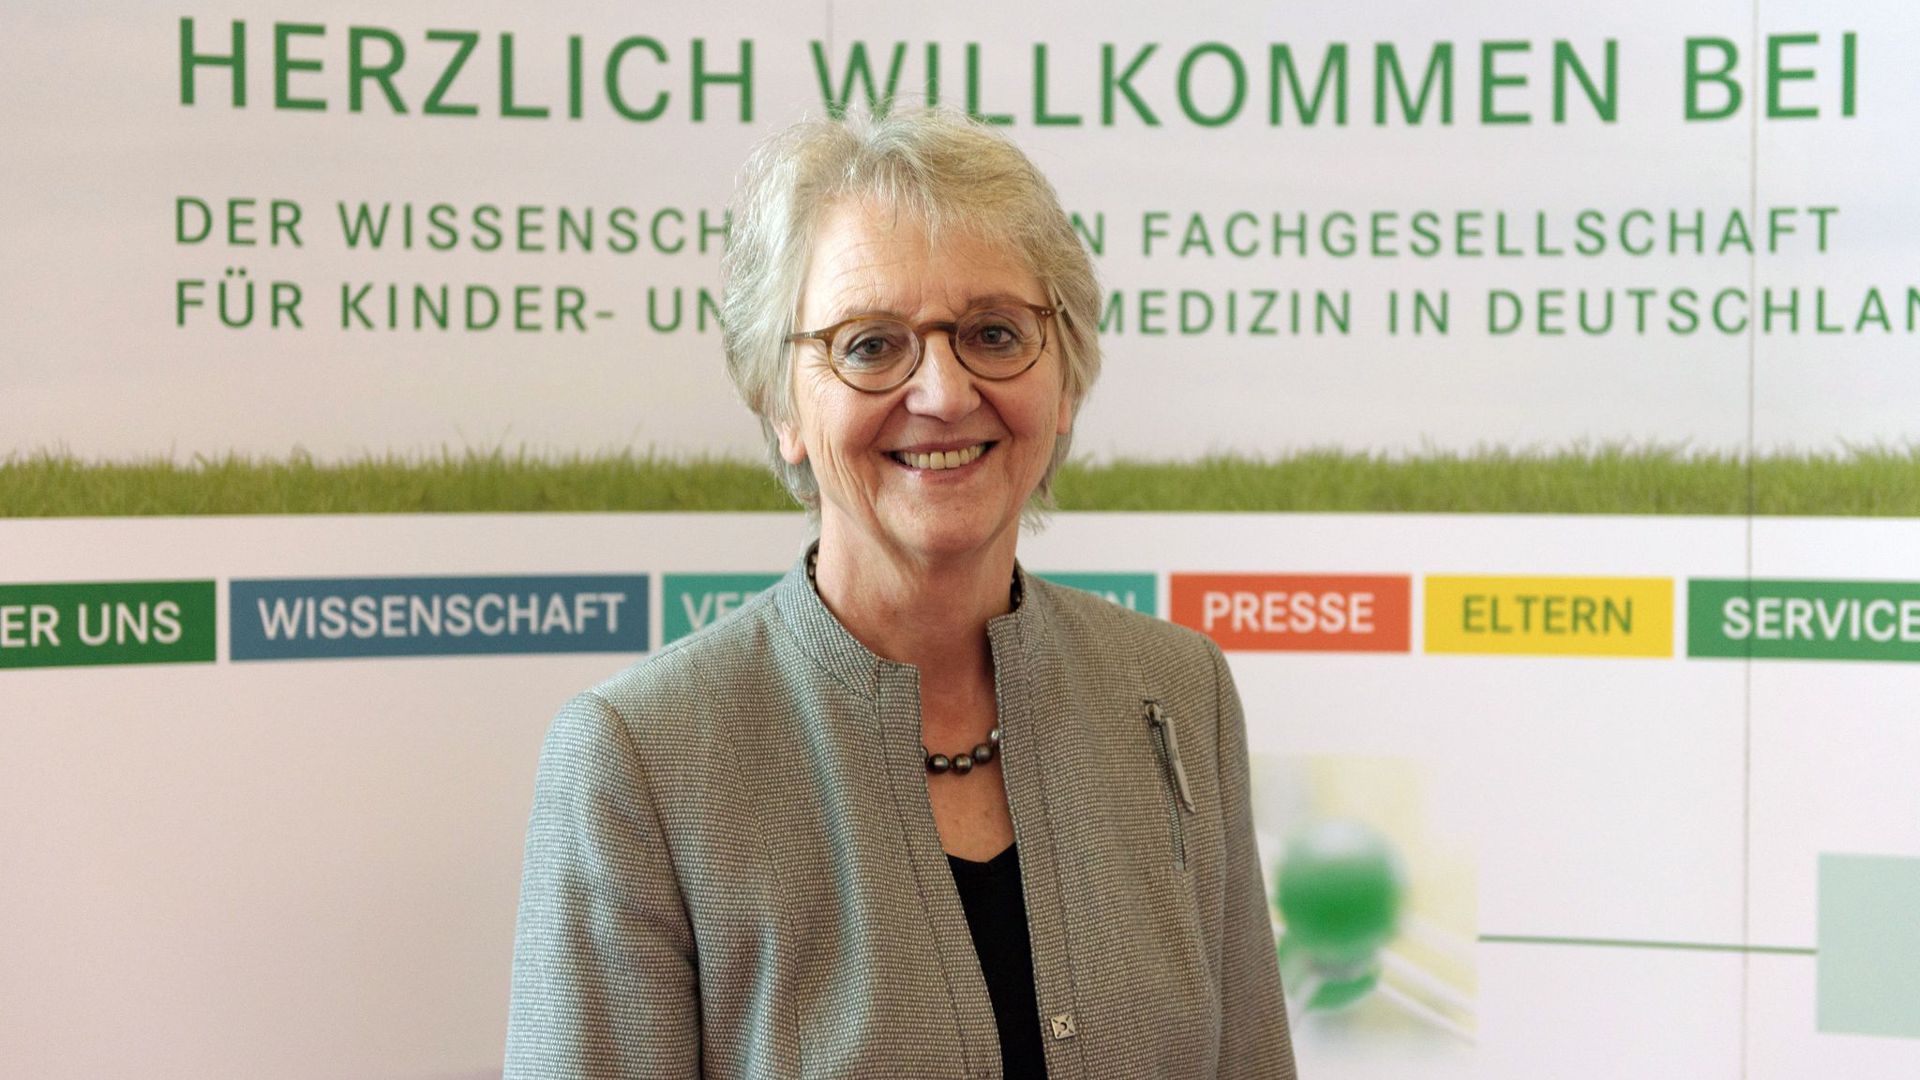 Prof. Ingeborg Krägeloh-Mann, Vizepräsidentin der Deutschen Gesellschaft für Kinder- und Jugendmedizin (DGKJ).